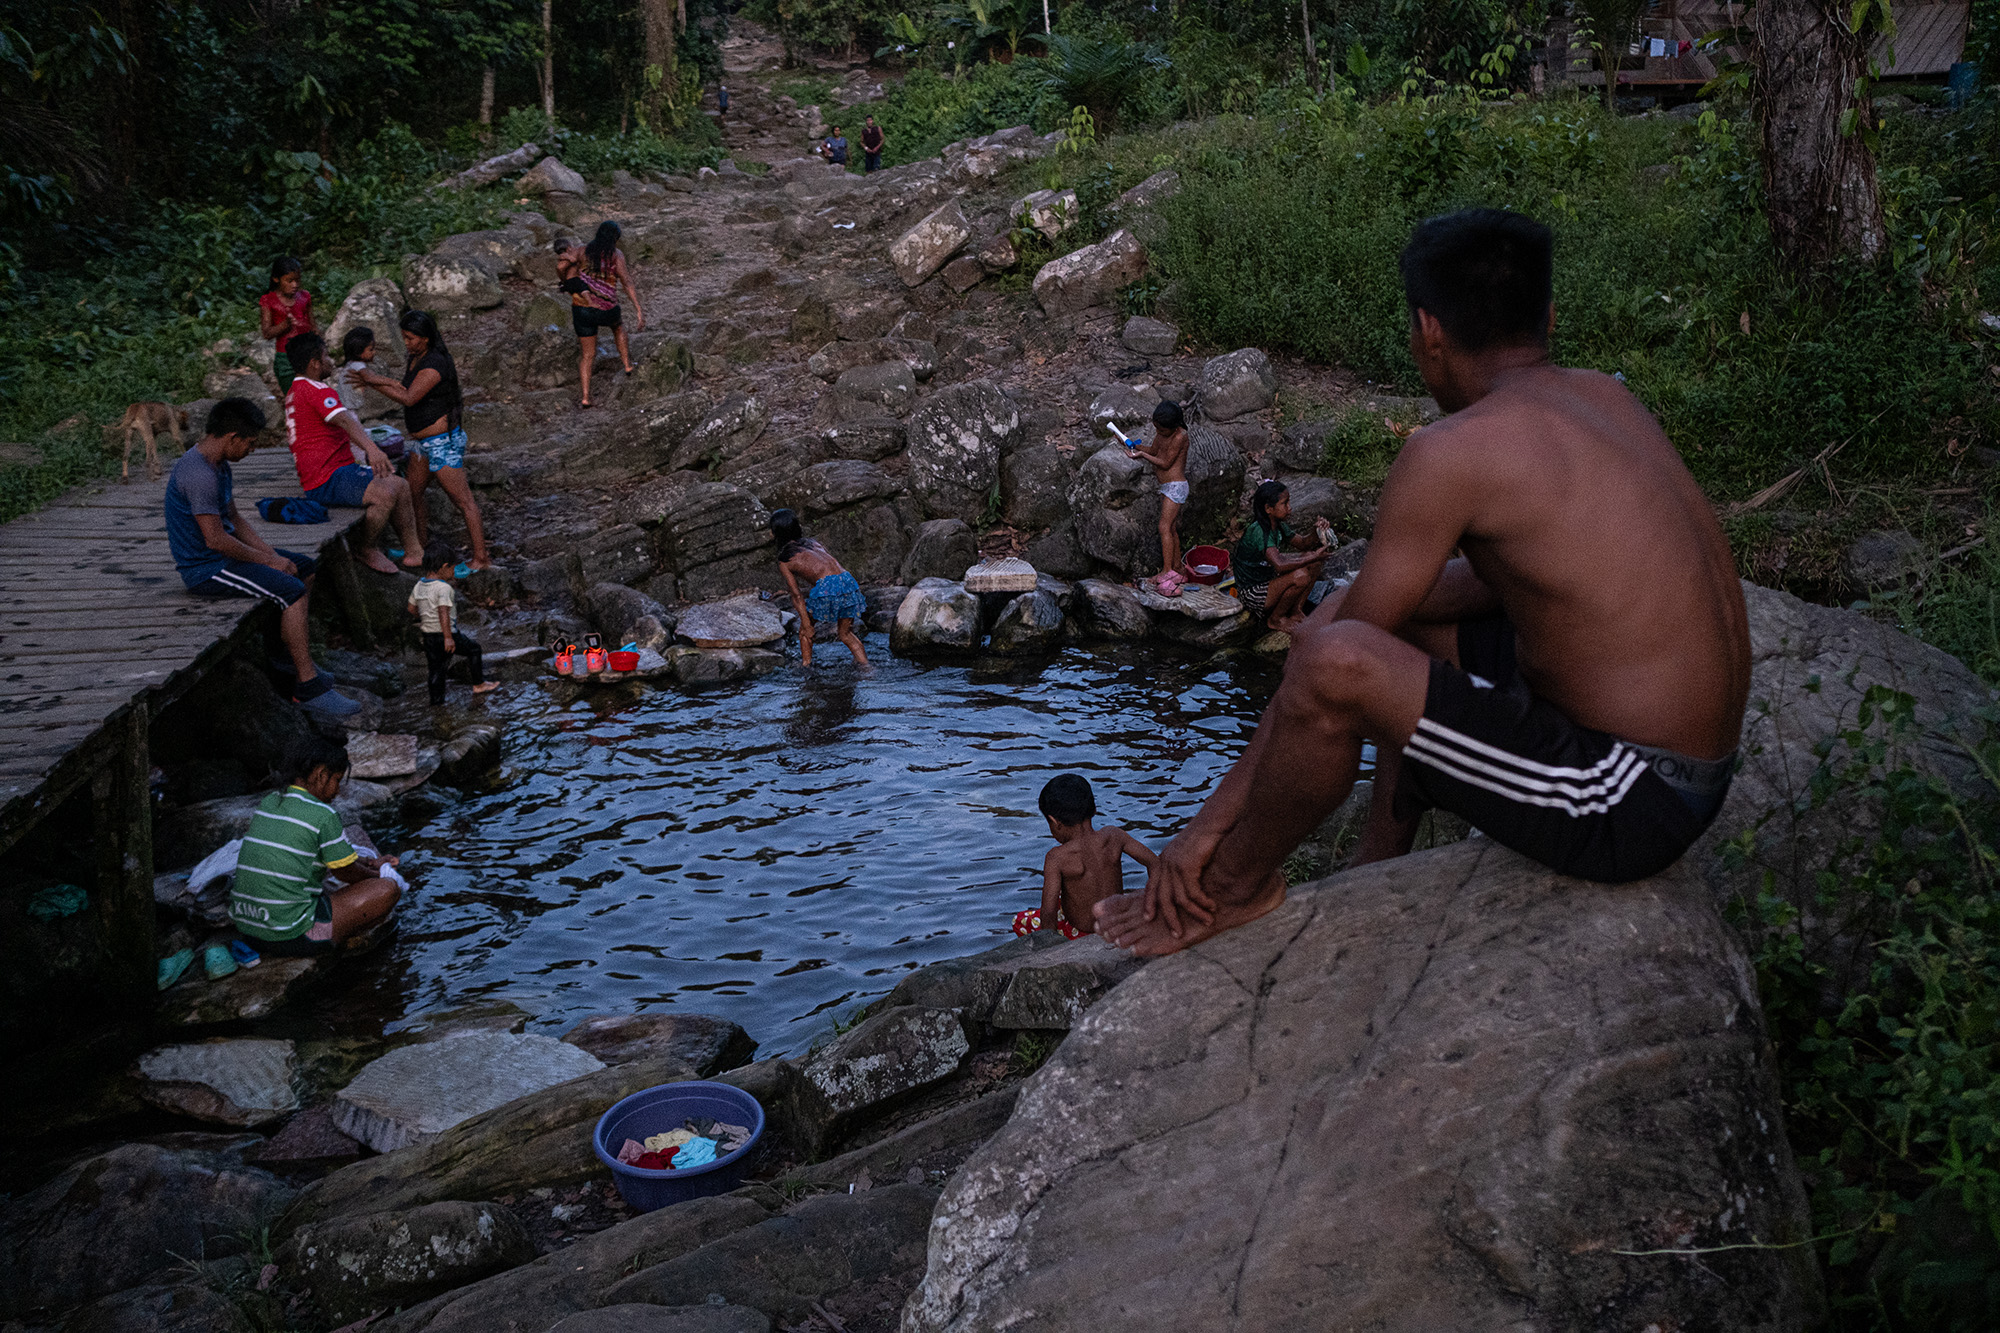 Las quebradas y caños son puntos de encuentro para lavar, bañarse y refrescarse en medio de las comunidades, cotidianidad de la comunidad de Curare, del resguardo Curare Los Ingleses. Amazonas. Foto: Víctor Galeano.